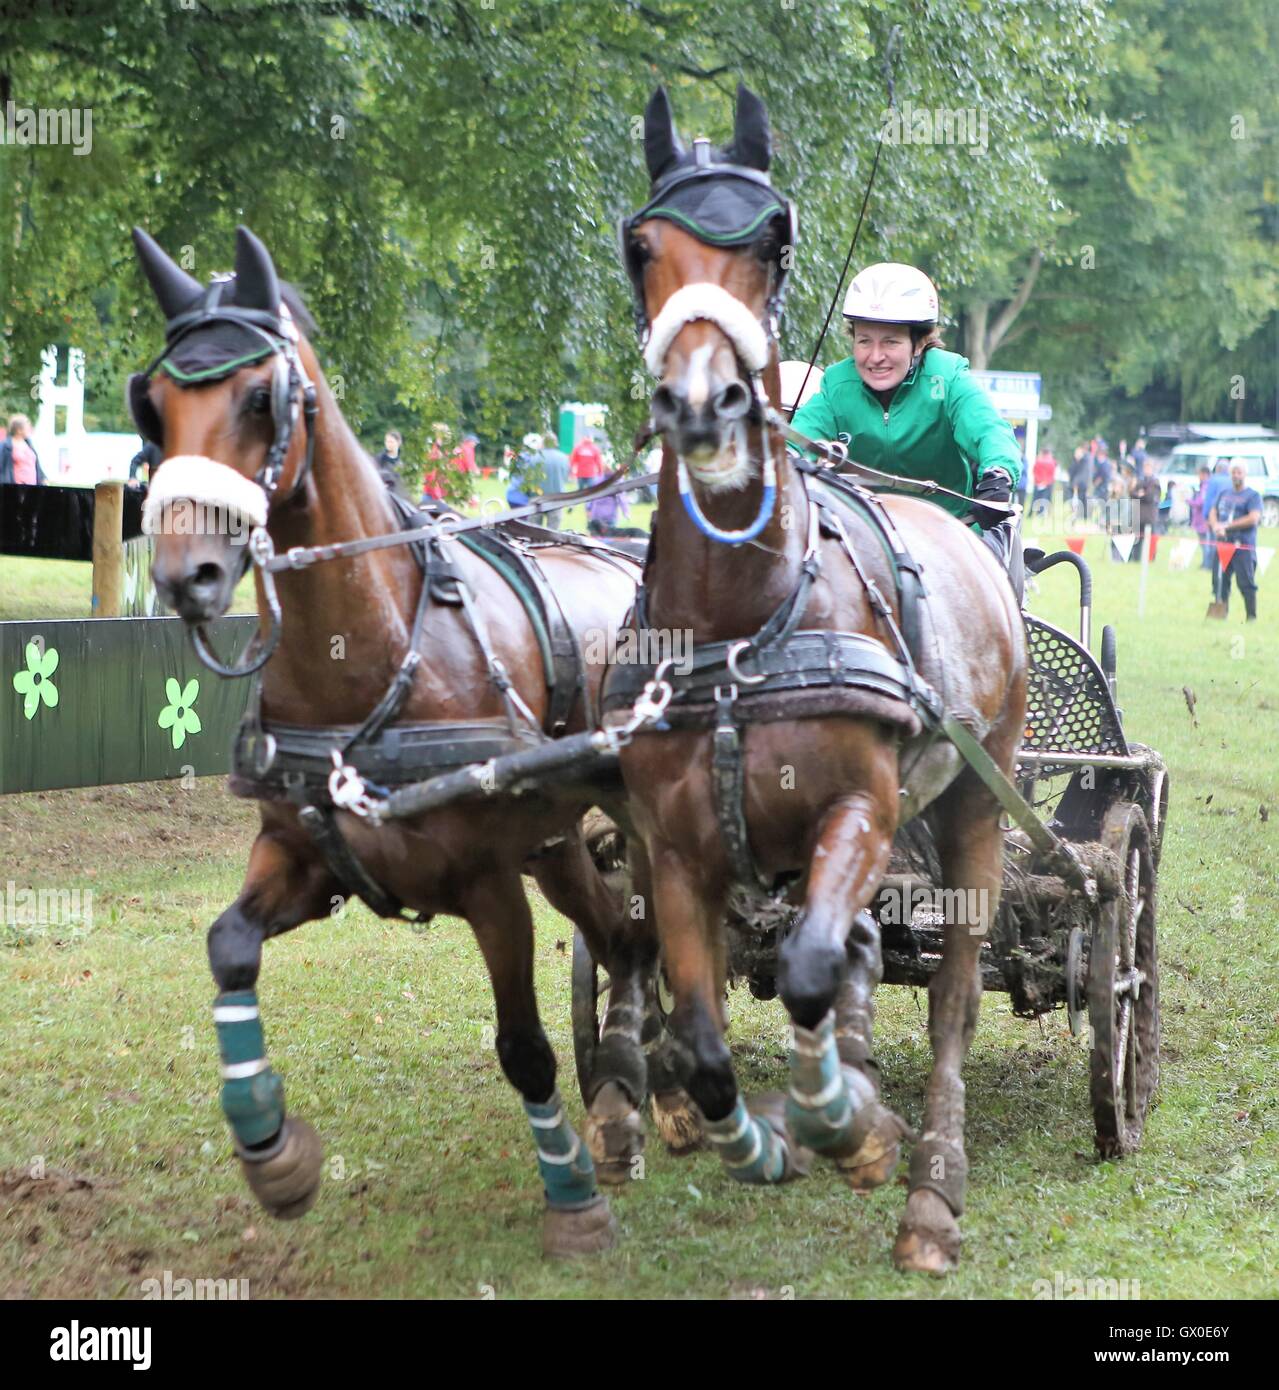 Abbinato con carrozza a cavallo in competizione maratona Foto Stock